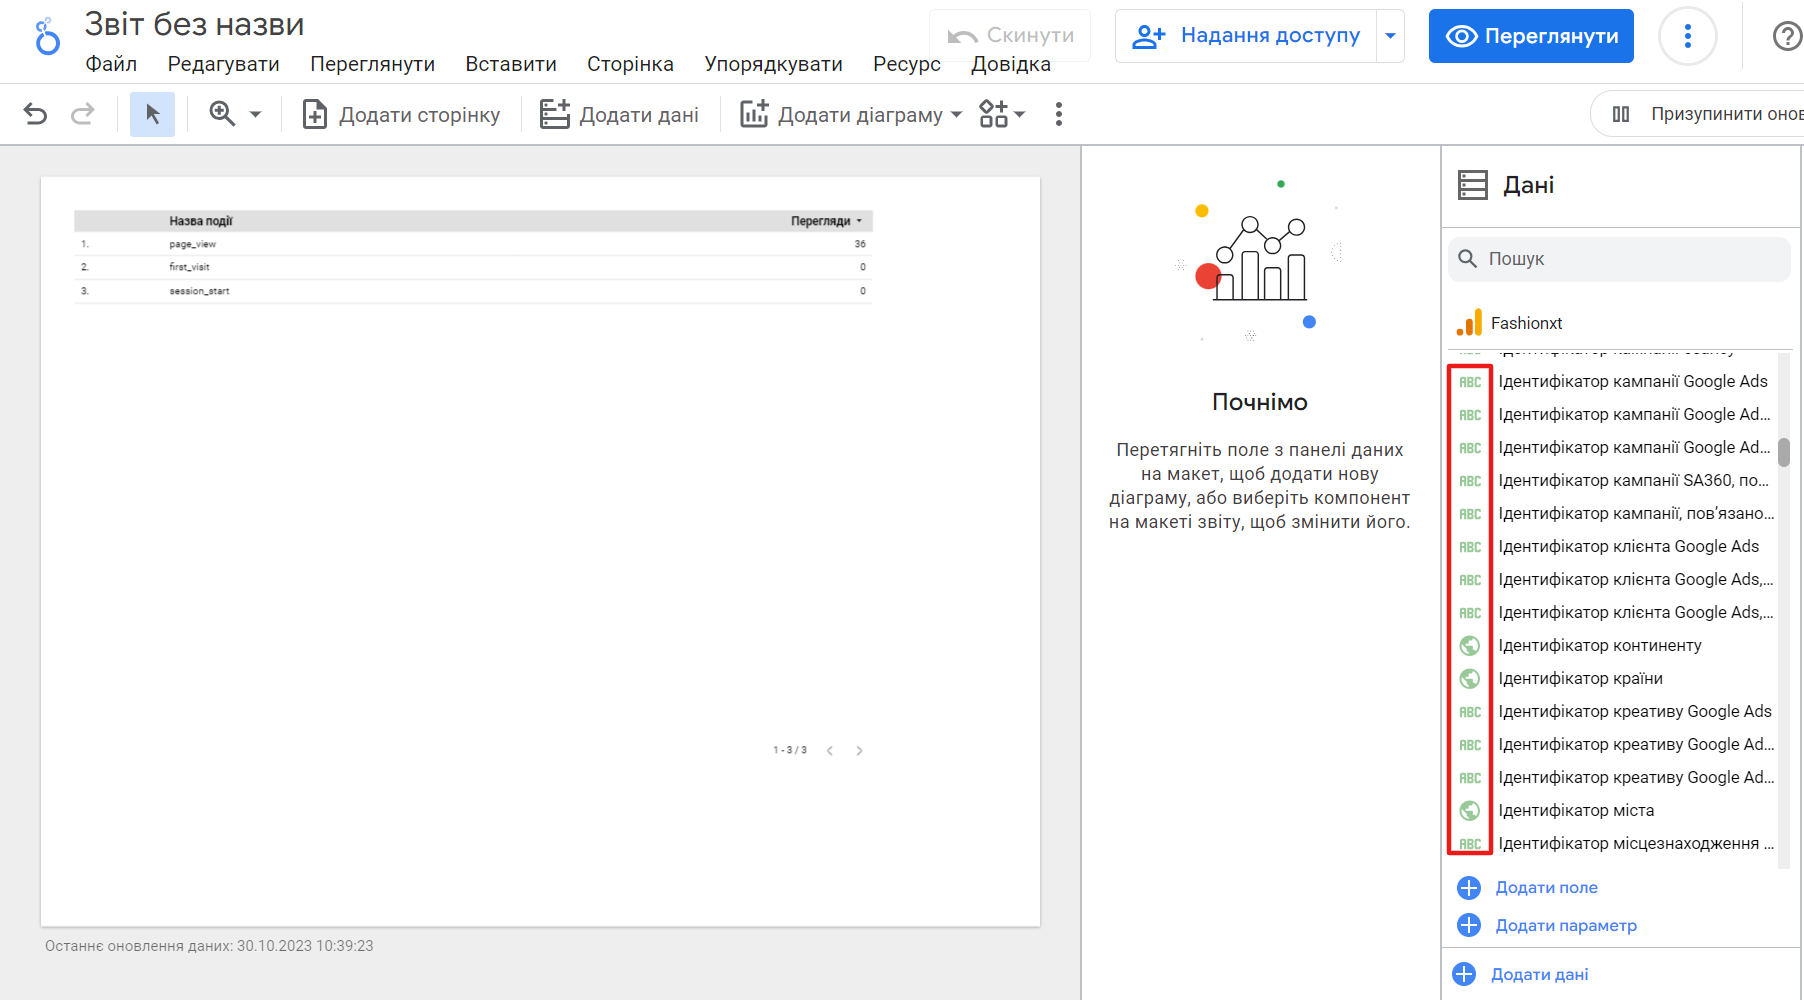 Гайд по работе с Google Looker Studio: создавайте отчеты с удовольствием!